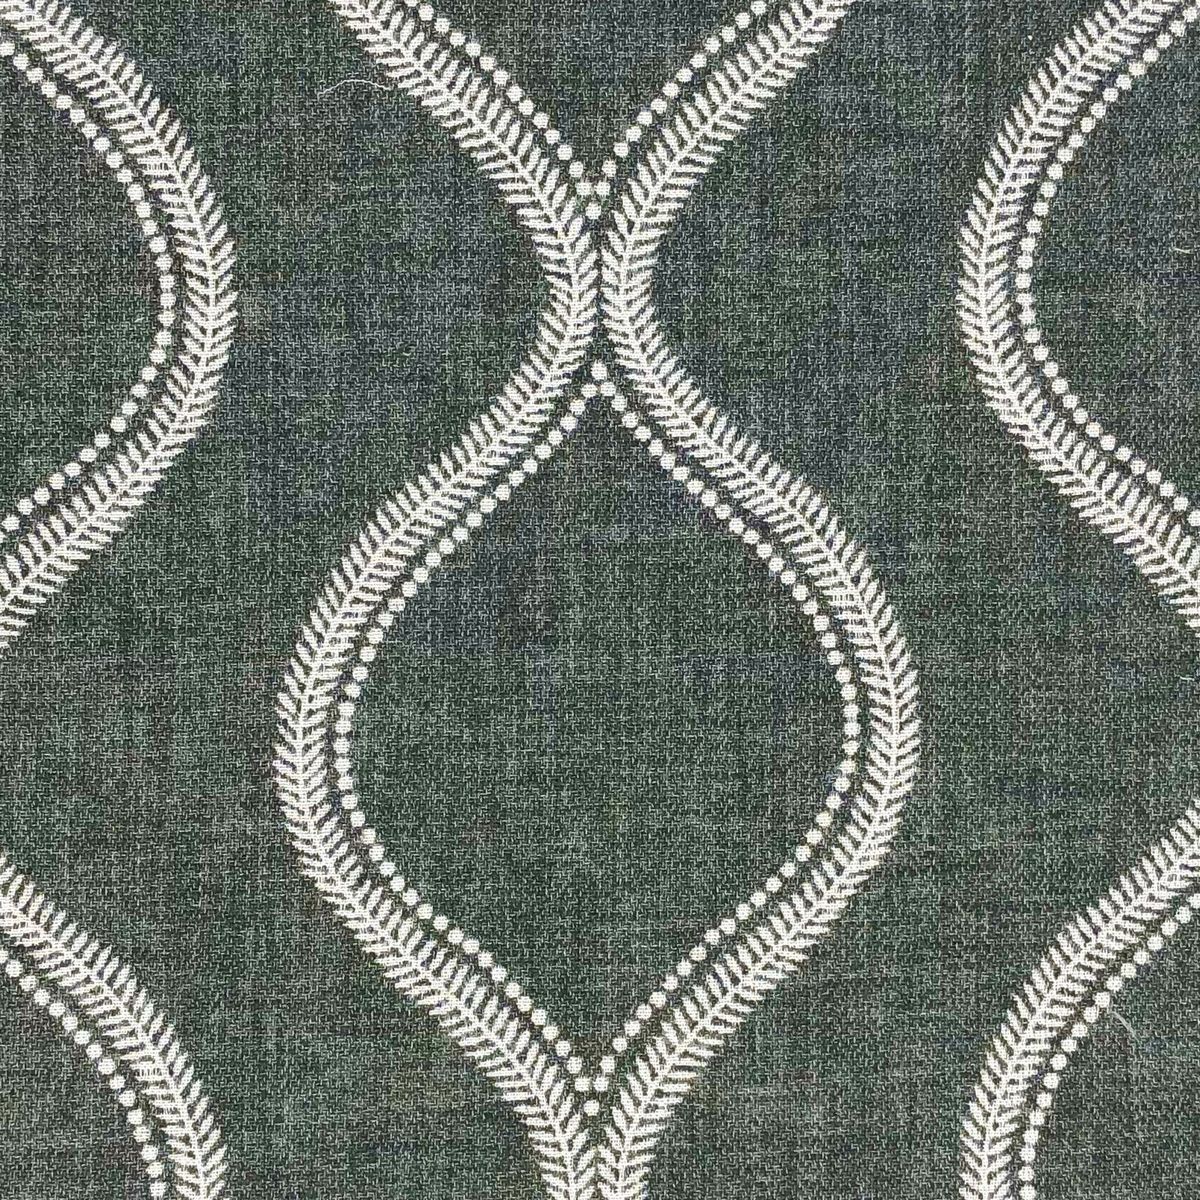 Ledbury Charcoal Fabric by Chatham Glyn